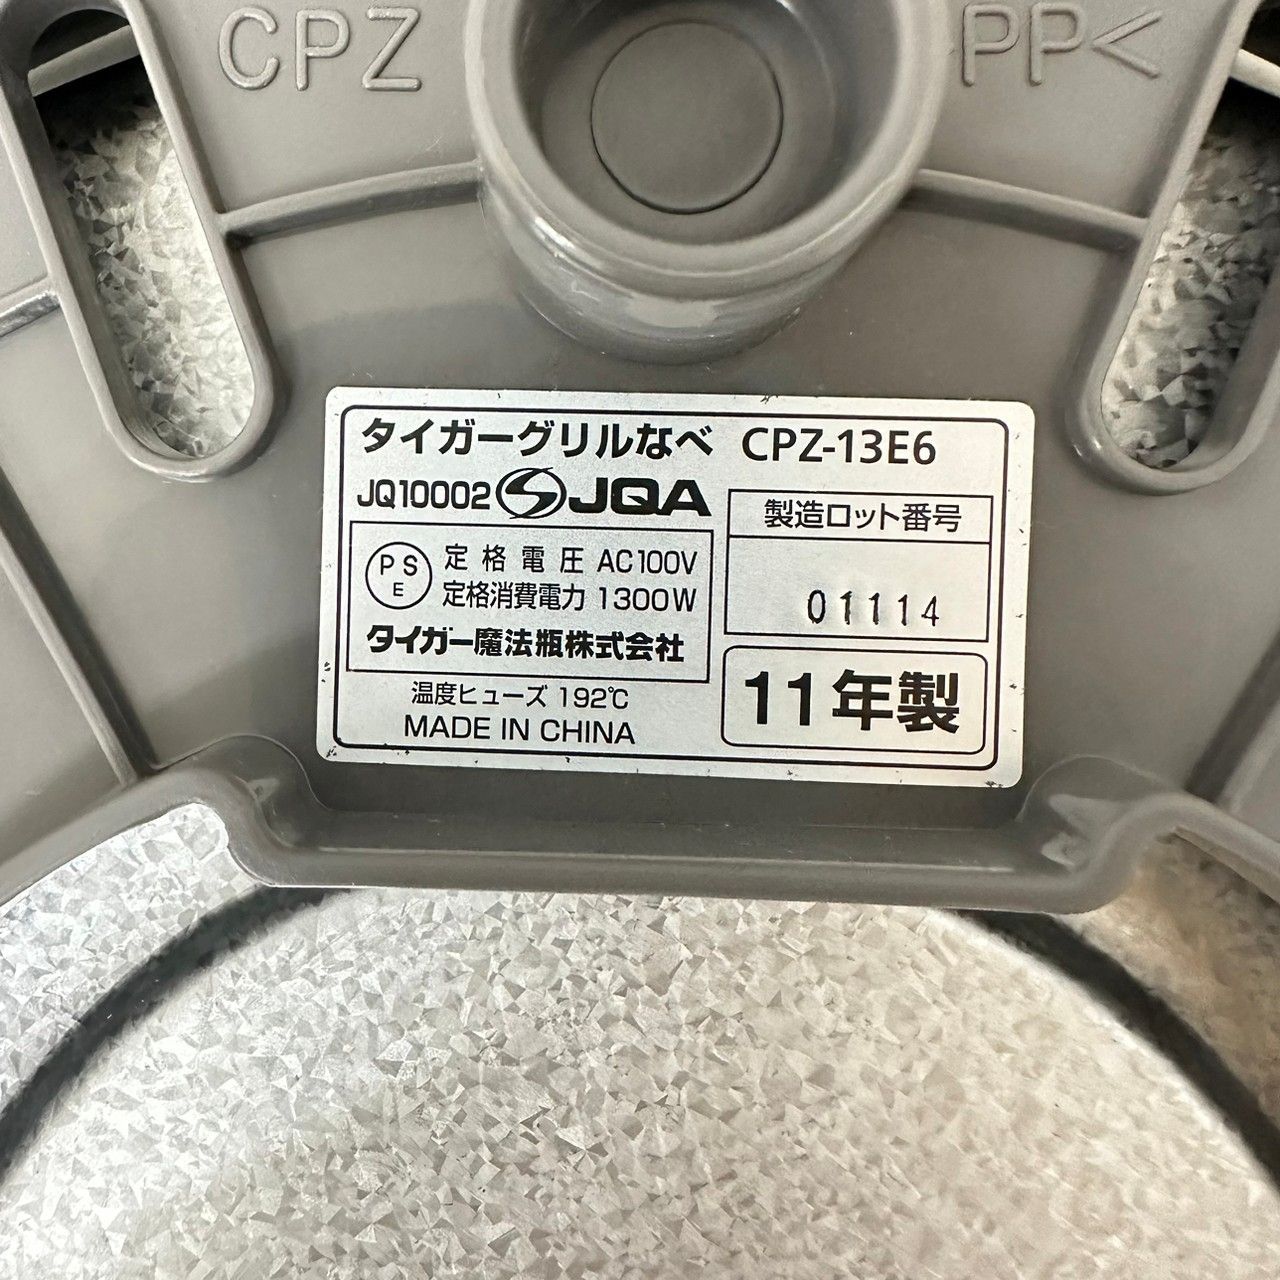 TIGER グリルなべ CPZ-13E6 調理器具 ホットプレート コード付属 4356 リユースショップ ヤマト メルカリ